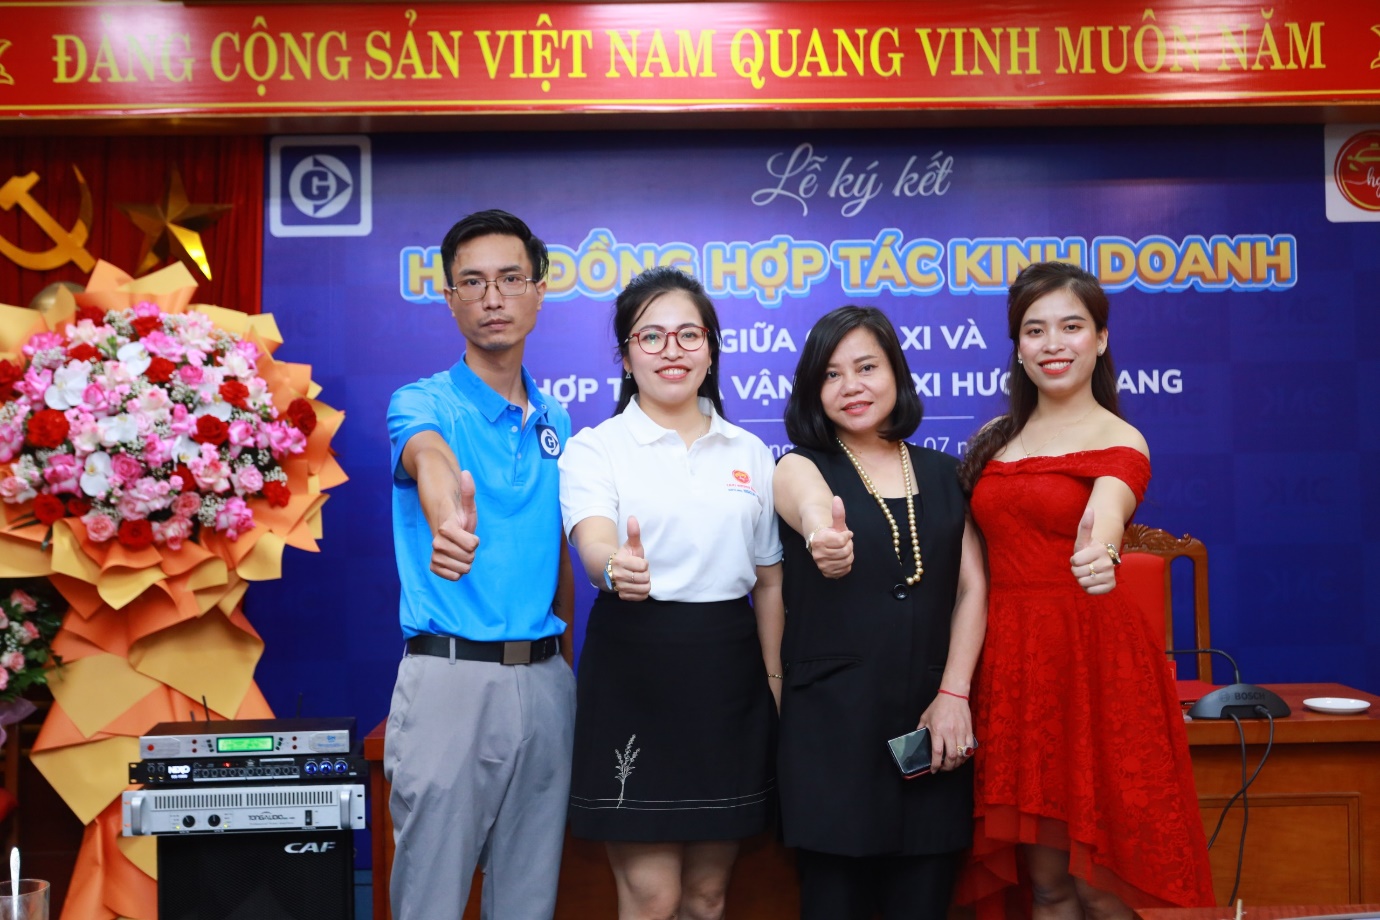 GV Taxi “bắt tay” Hương Giang: Đưa app đặt xe công nghệ tới người dân Bắc Giang - 3